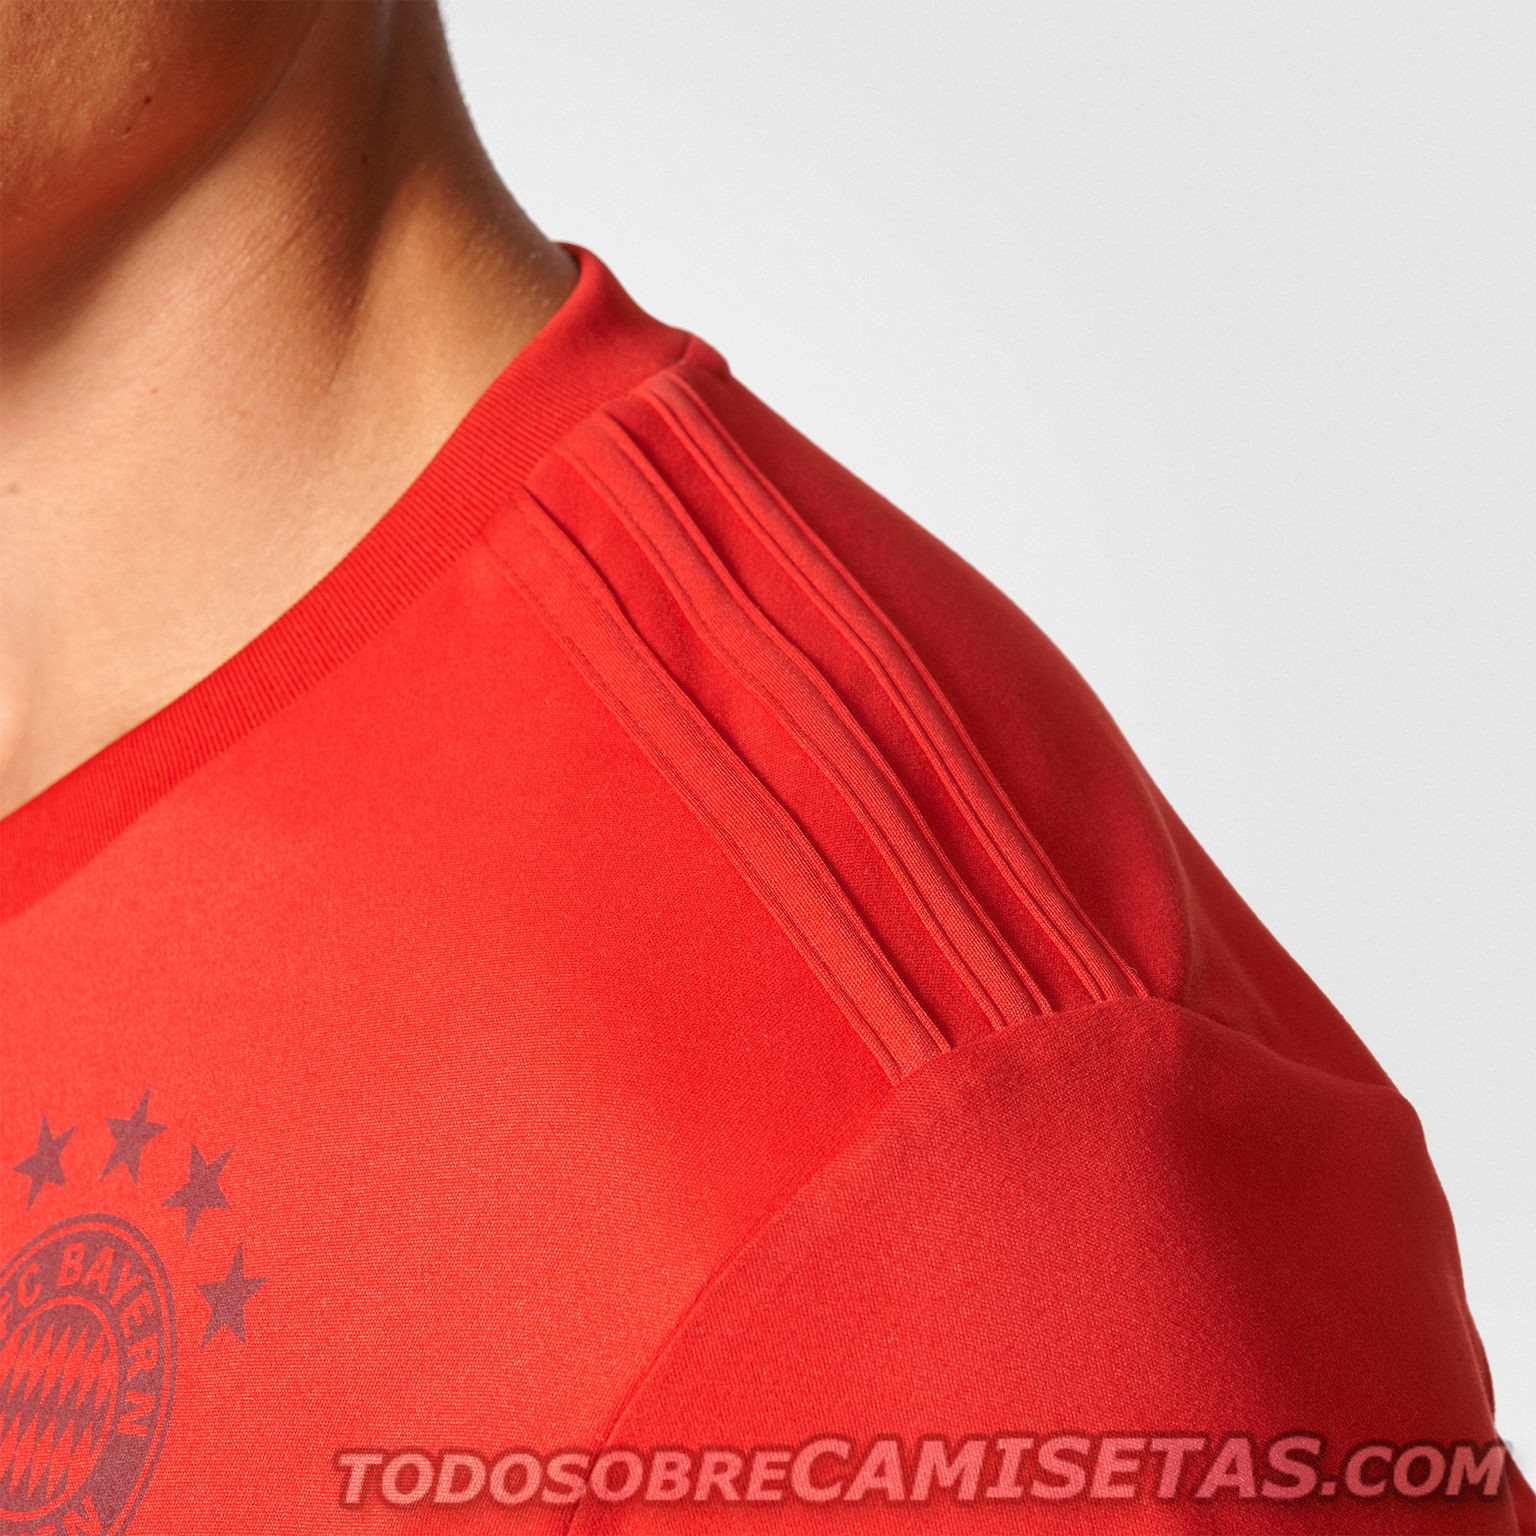 adidas Parley FC Bayern and Real Madrid Kits